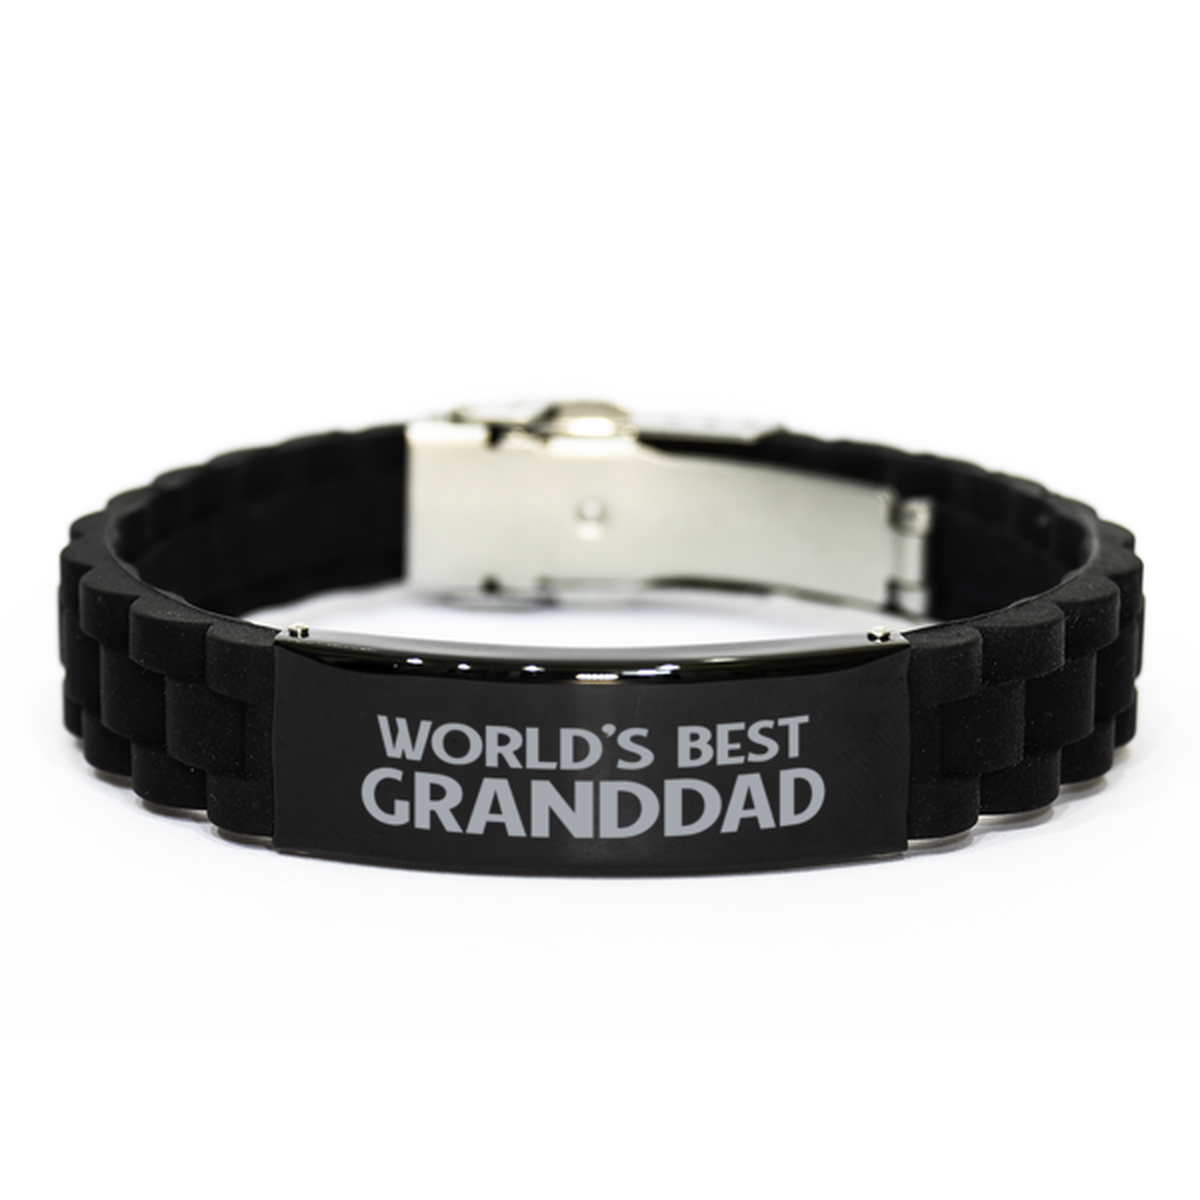 World's Best Granddad Gifts, Funny Black Engraved Bracelet For Granddad, Family Gifts For Men